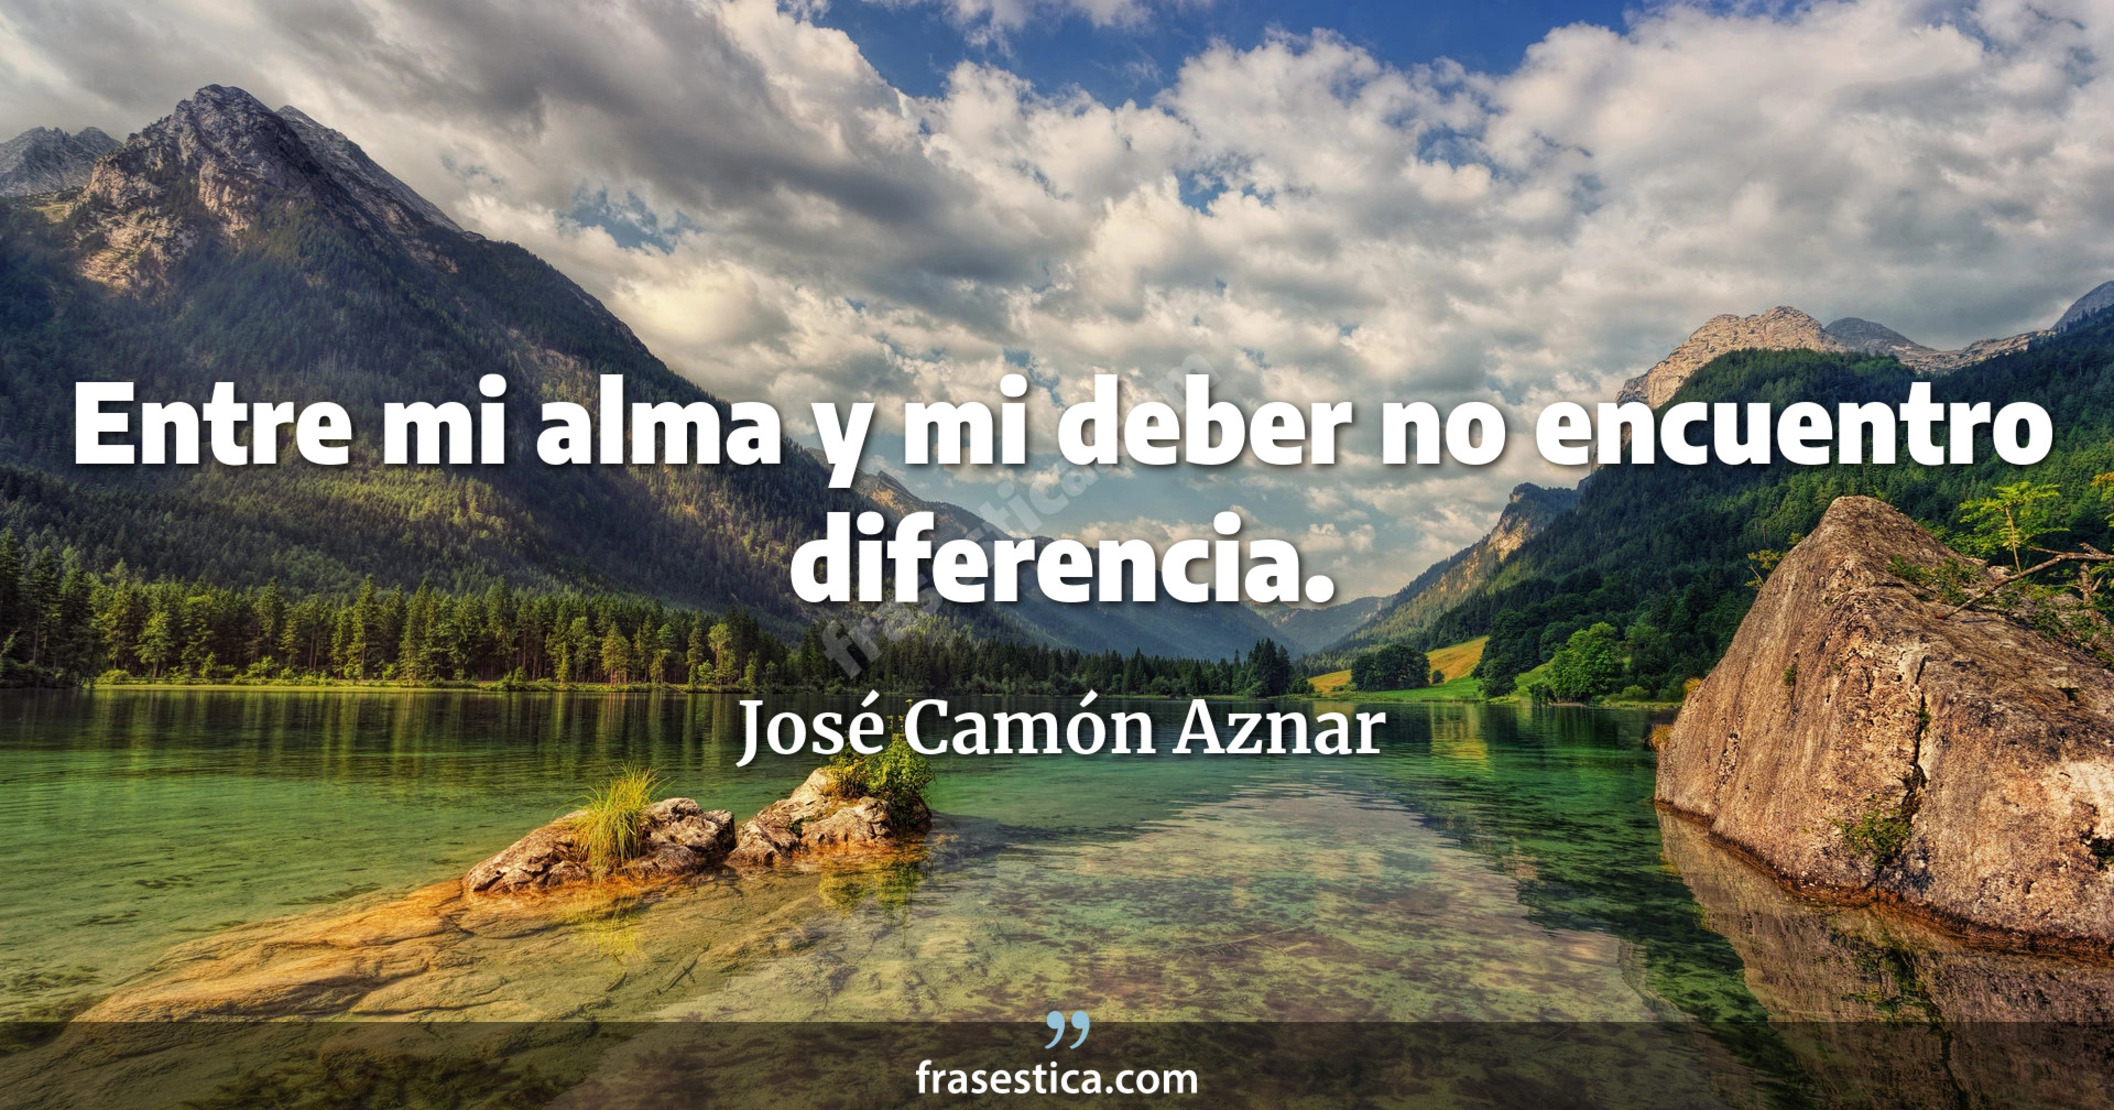 Entre mi alma y mi deber no encuentro diferencia. - José Camón Aznar